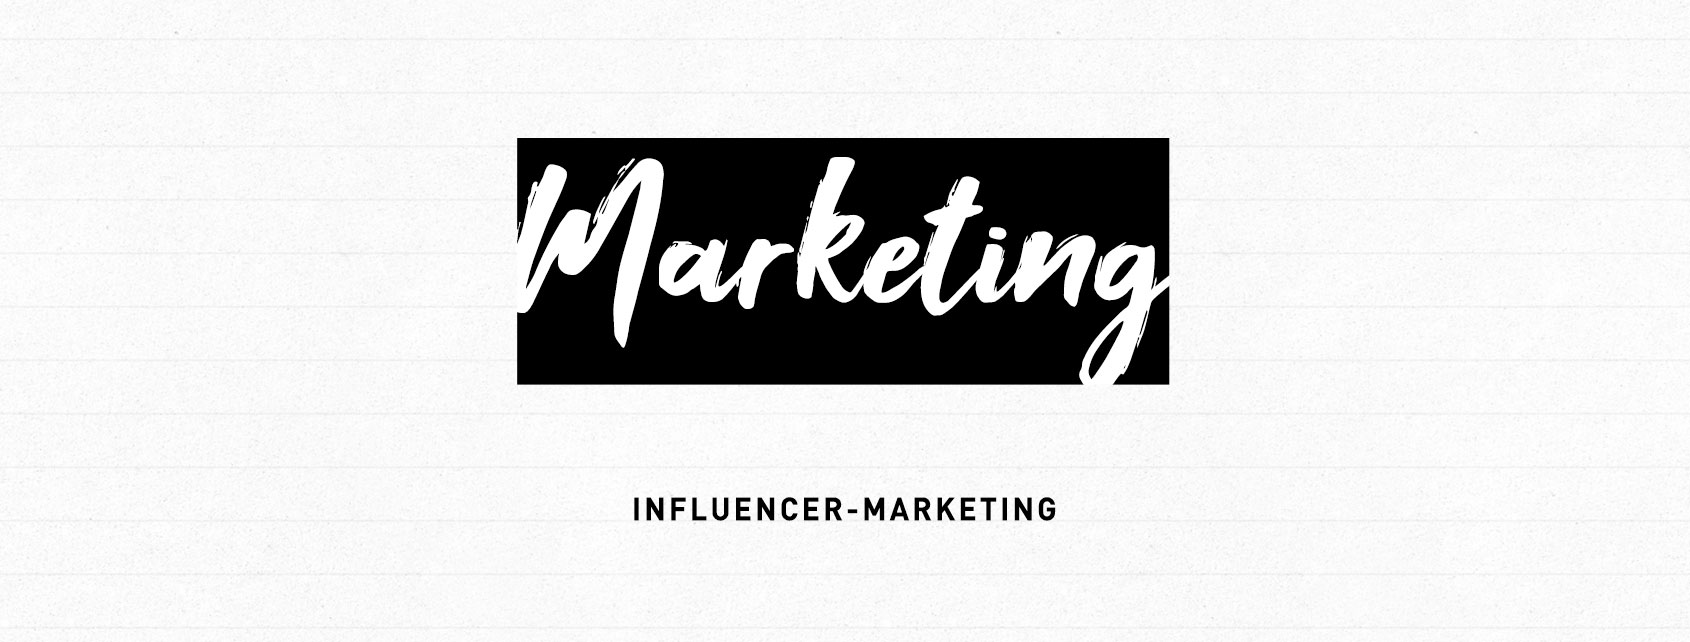 Influencer-Marketing – Auf dem Weg ins Neuland